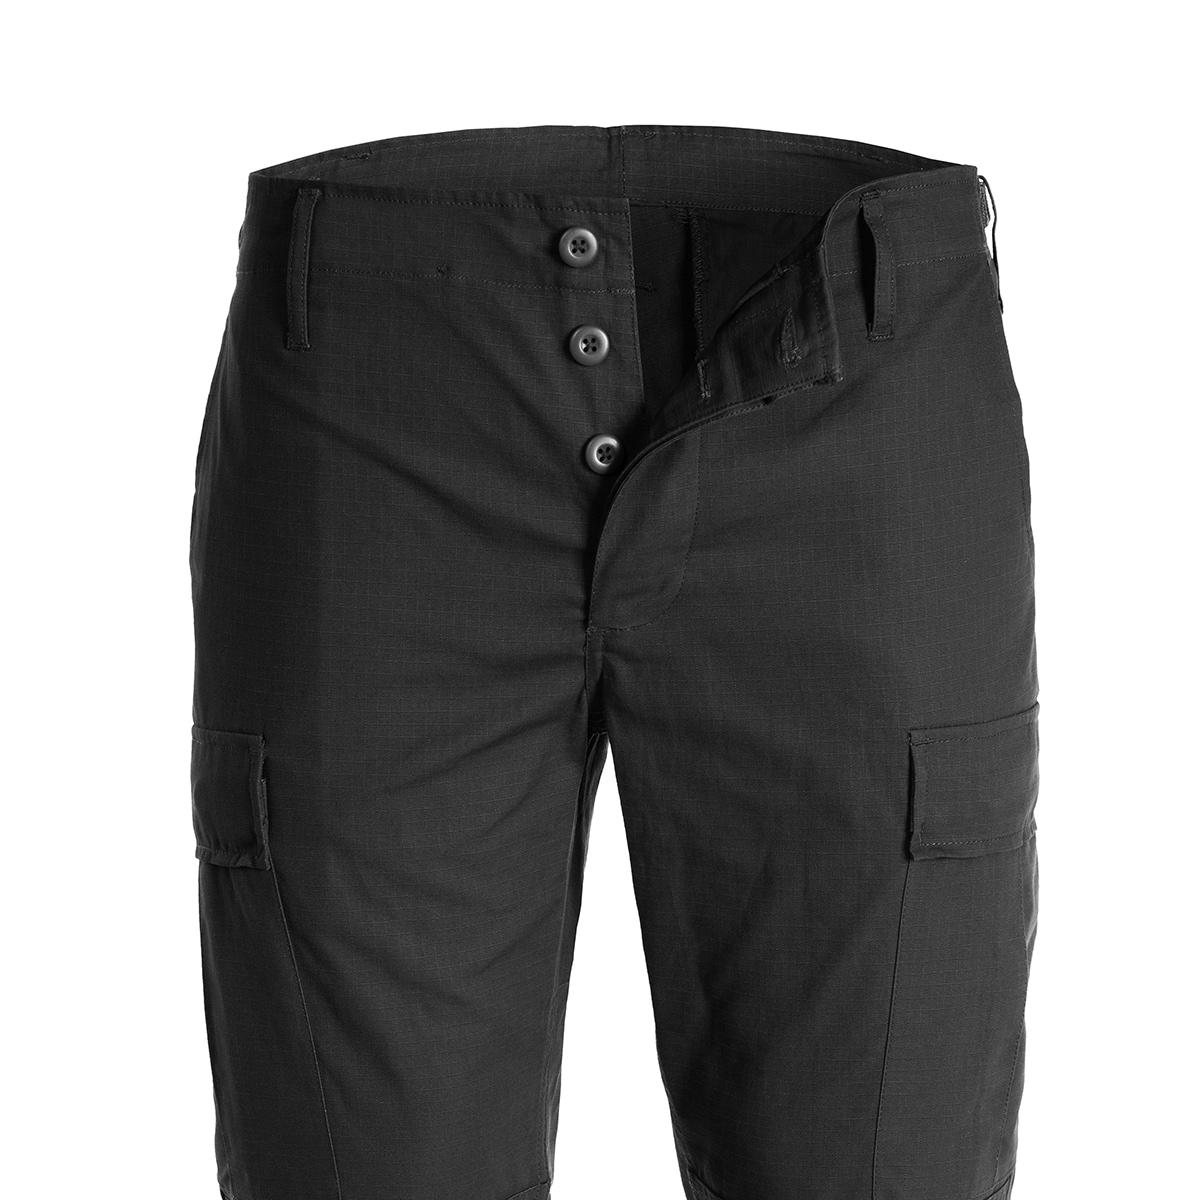 Військові штани Mil-Tec Teesar RipStop BDU Slim Fit військові чорні